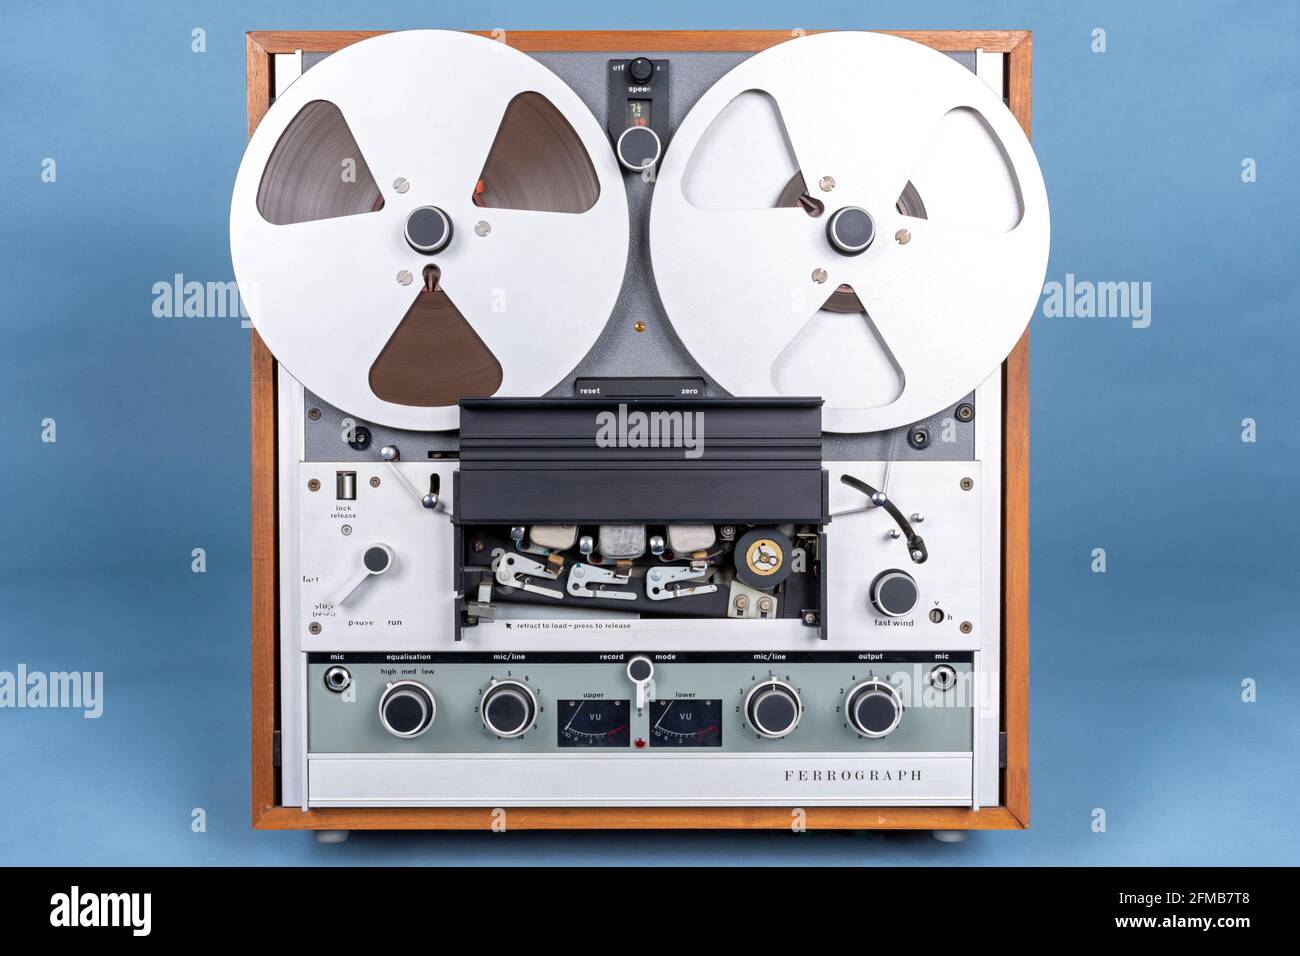 Magnétophone à bande série Ferrograph 7. Construit à la fin des années 1960-début des années 1970. Illustration avec le capot des têtes d'enregistrement ouvert. Banque D'Images